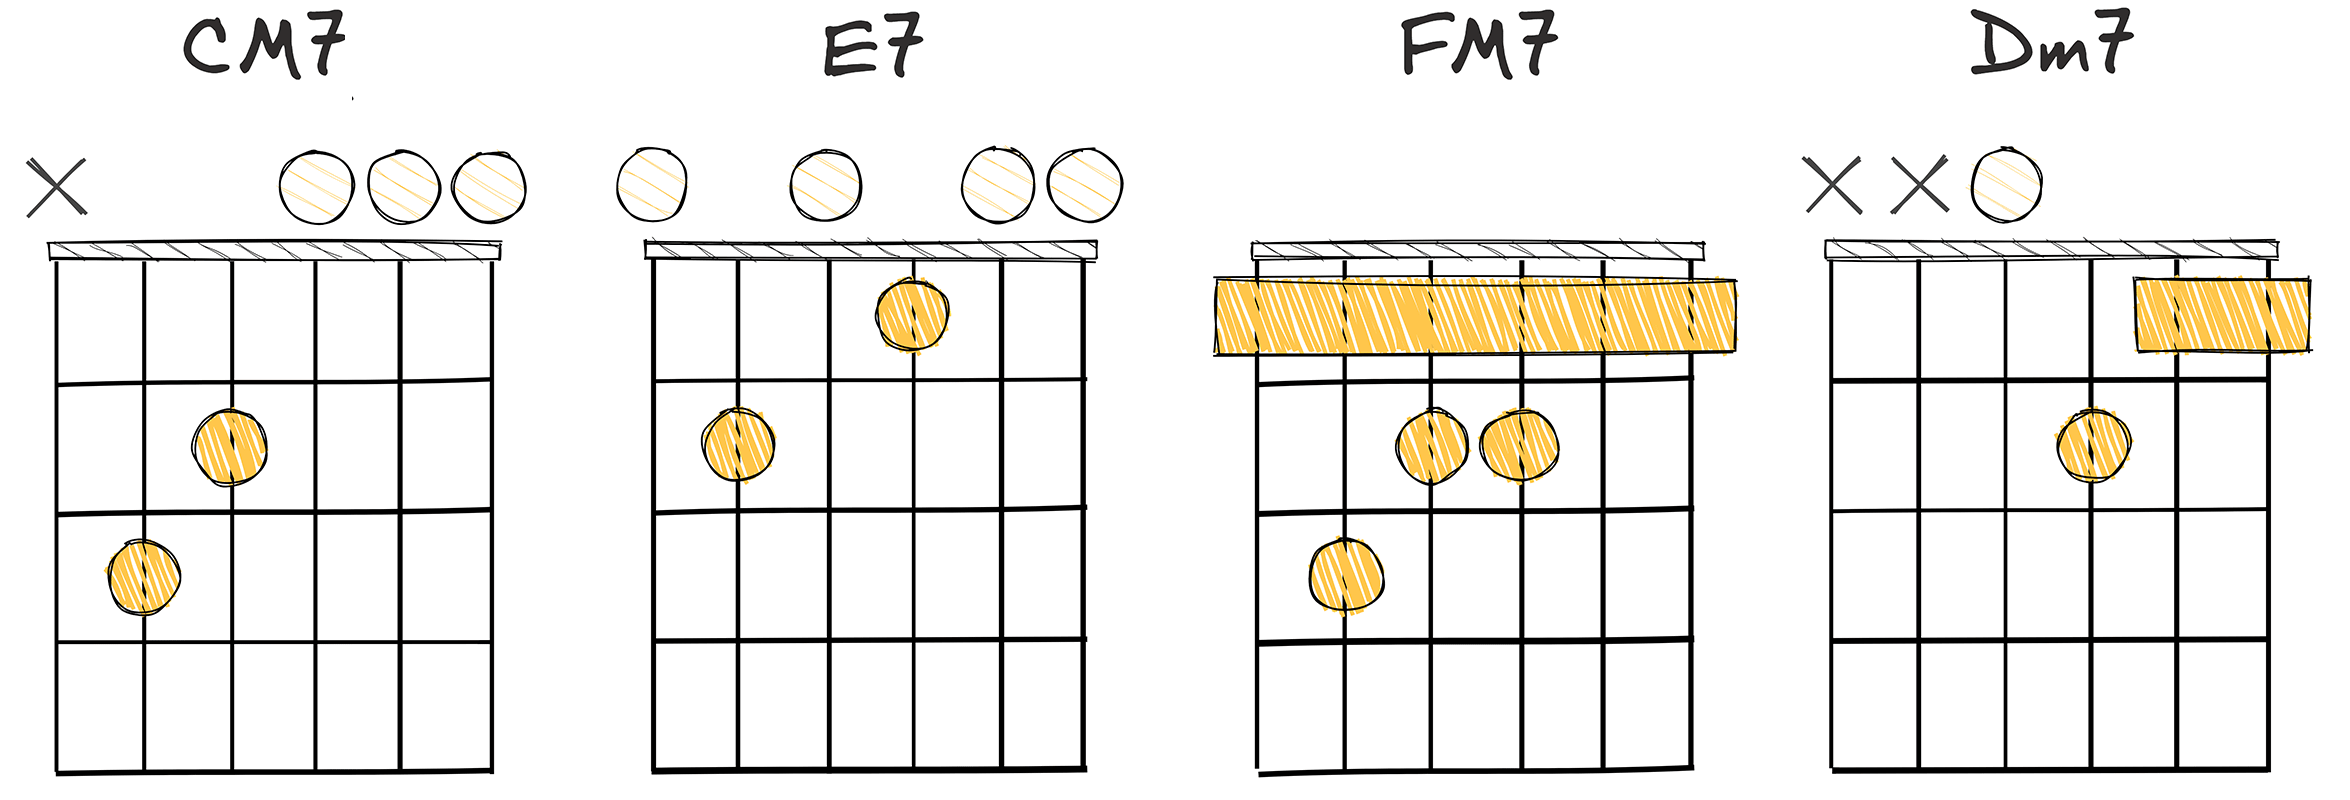 I7 - III7 - IV7 - ii7 (1-3-4-2) chords diagram